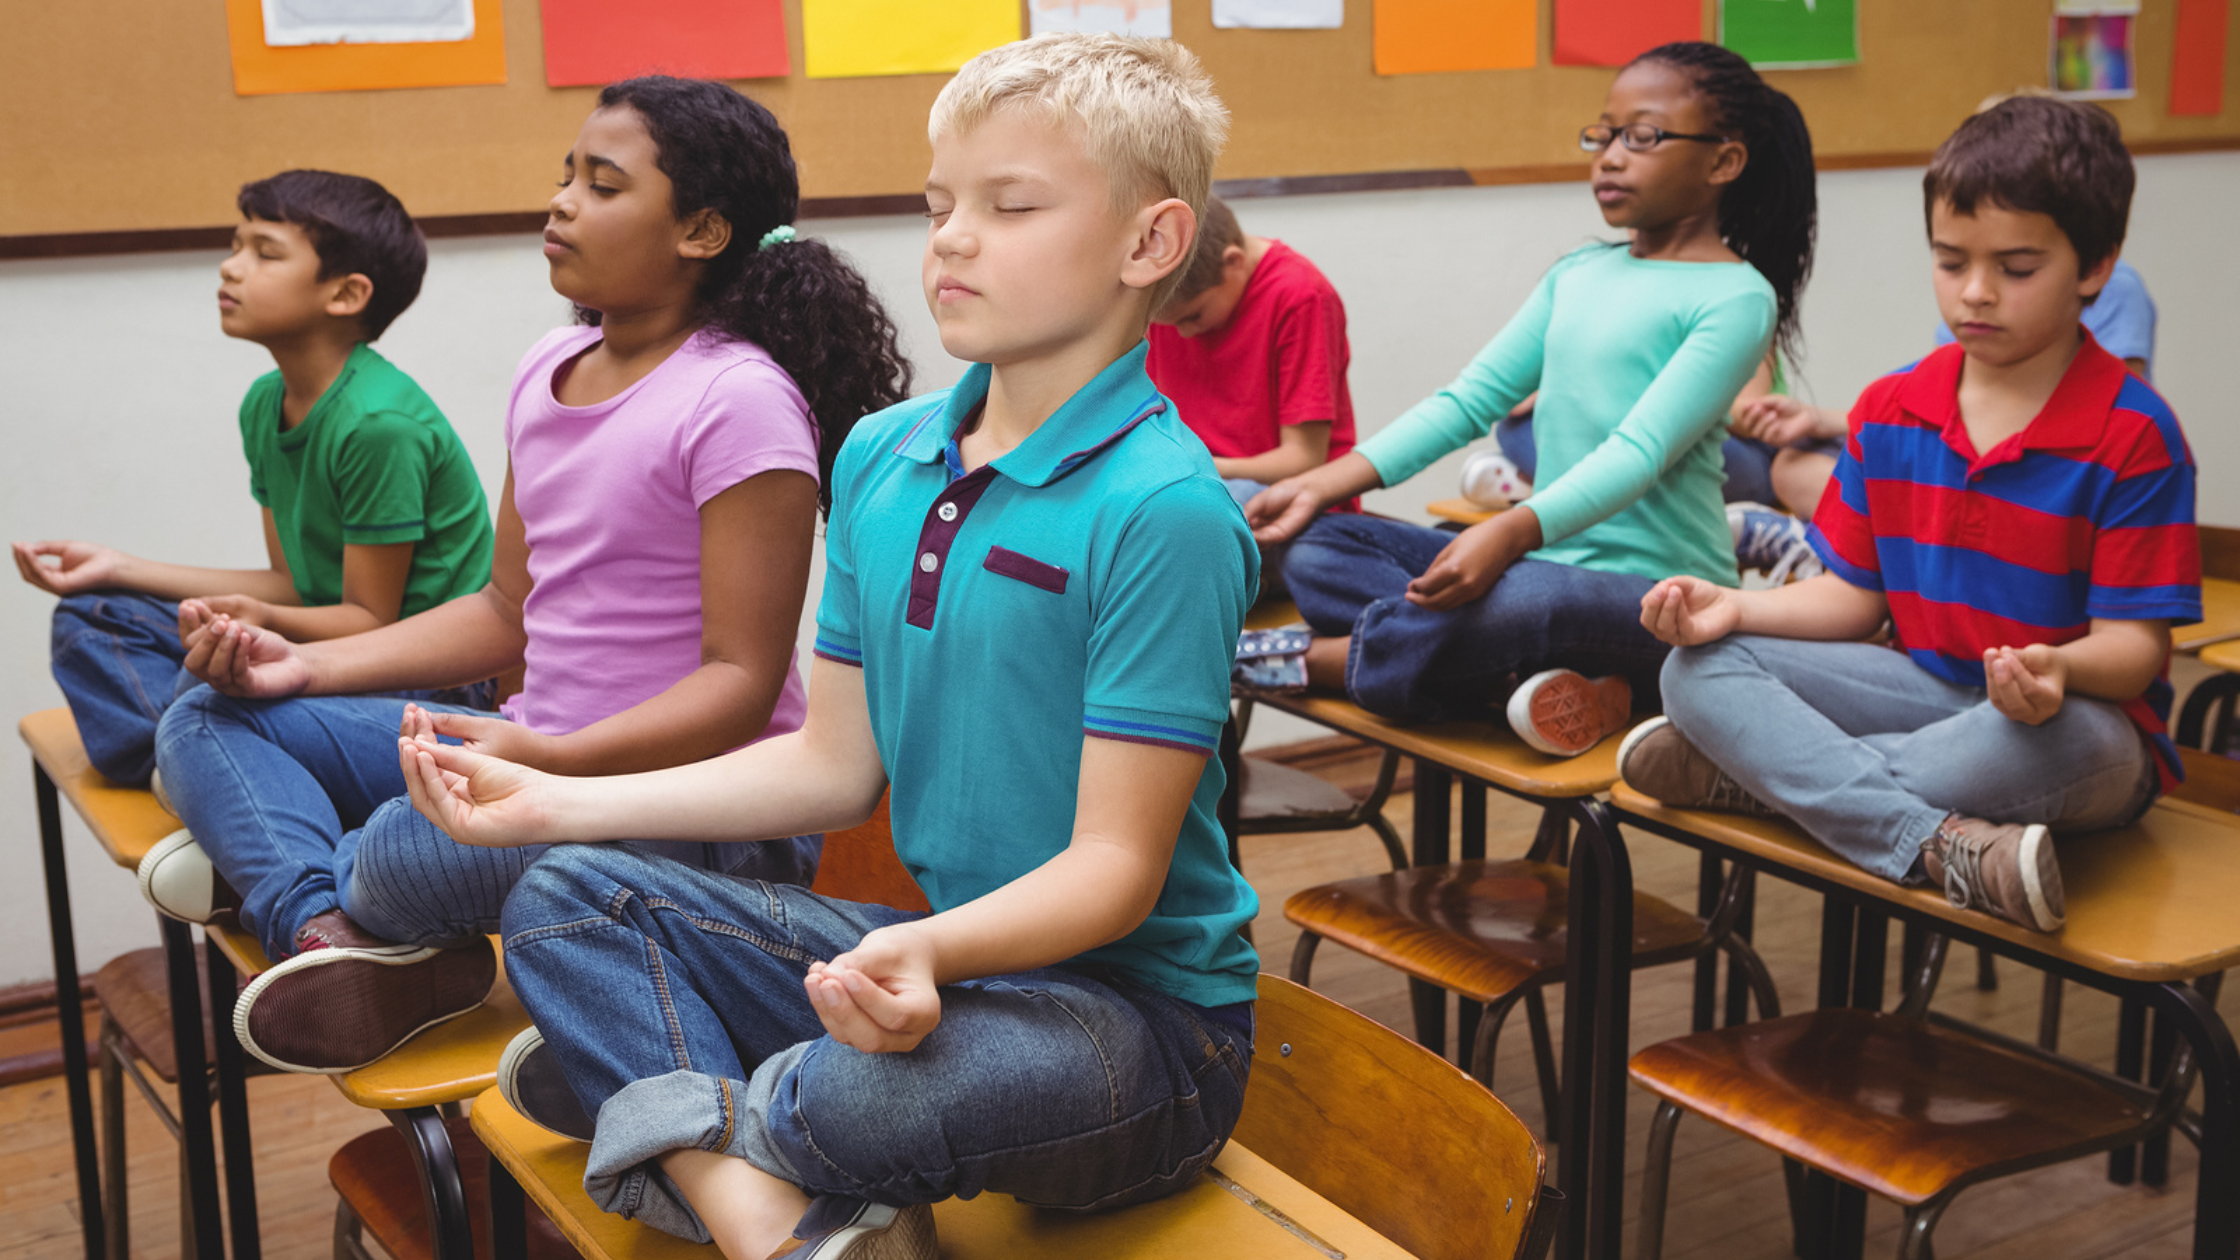 Children mindful at school